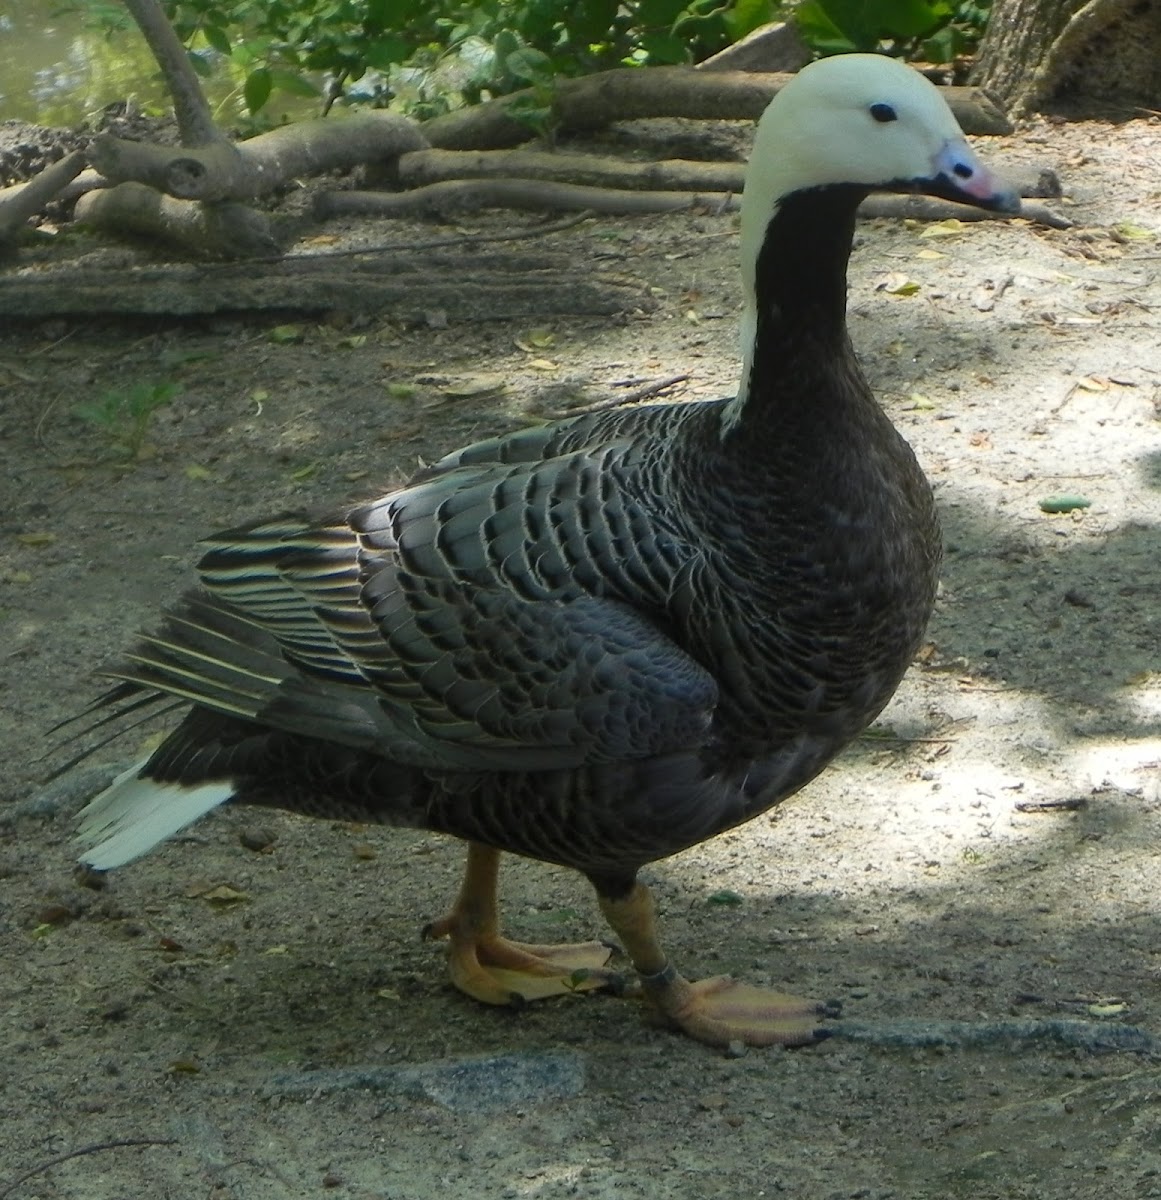 Emperor Goose